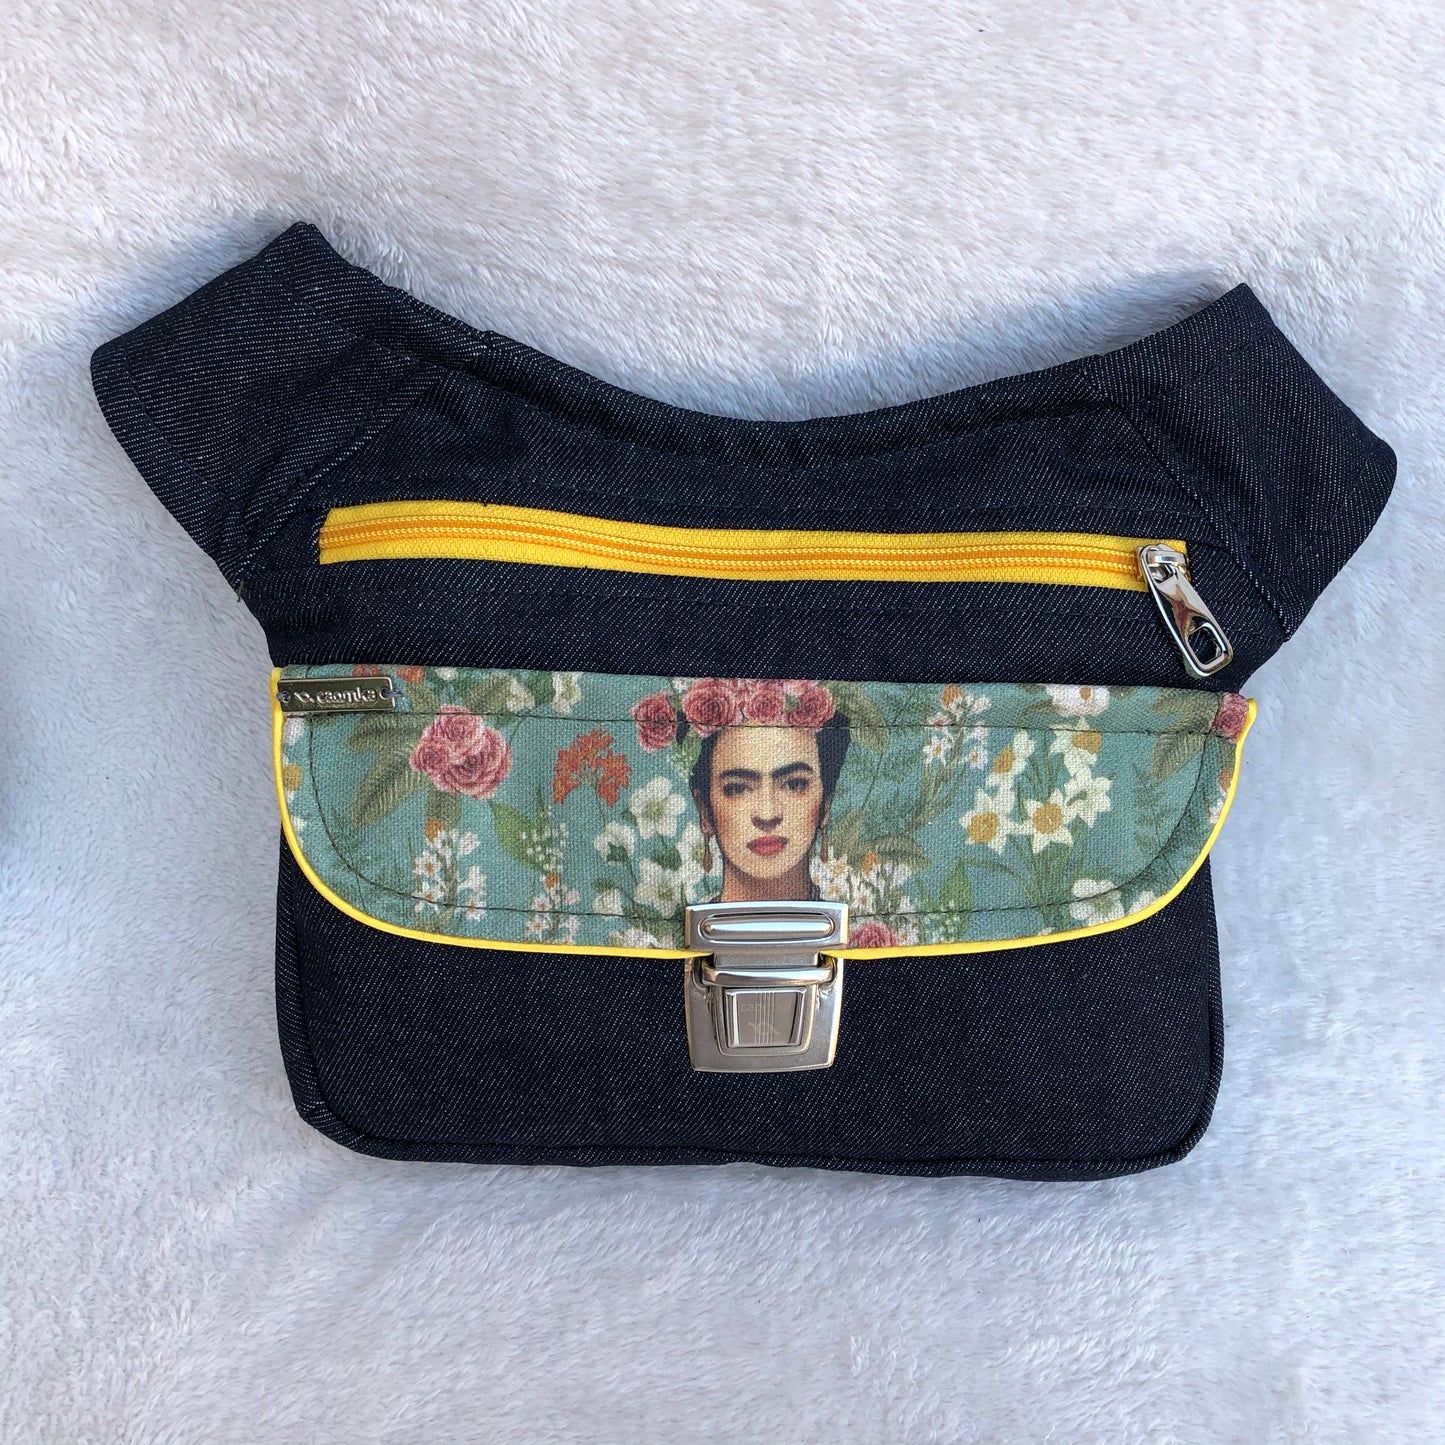 Special Jeans Frida Kahlo · Pieza Única Núm. 8270